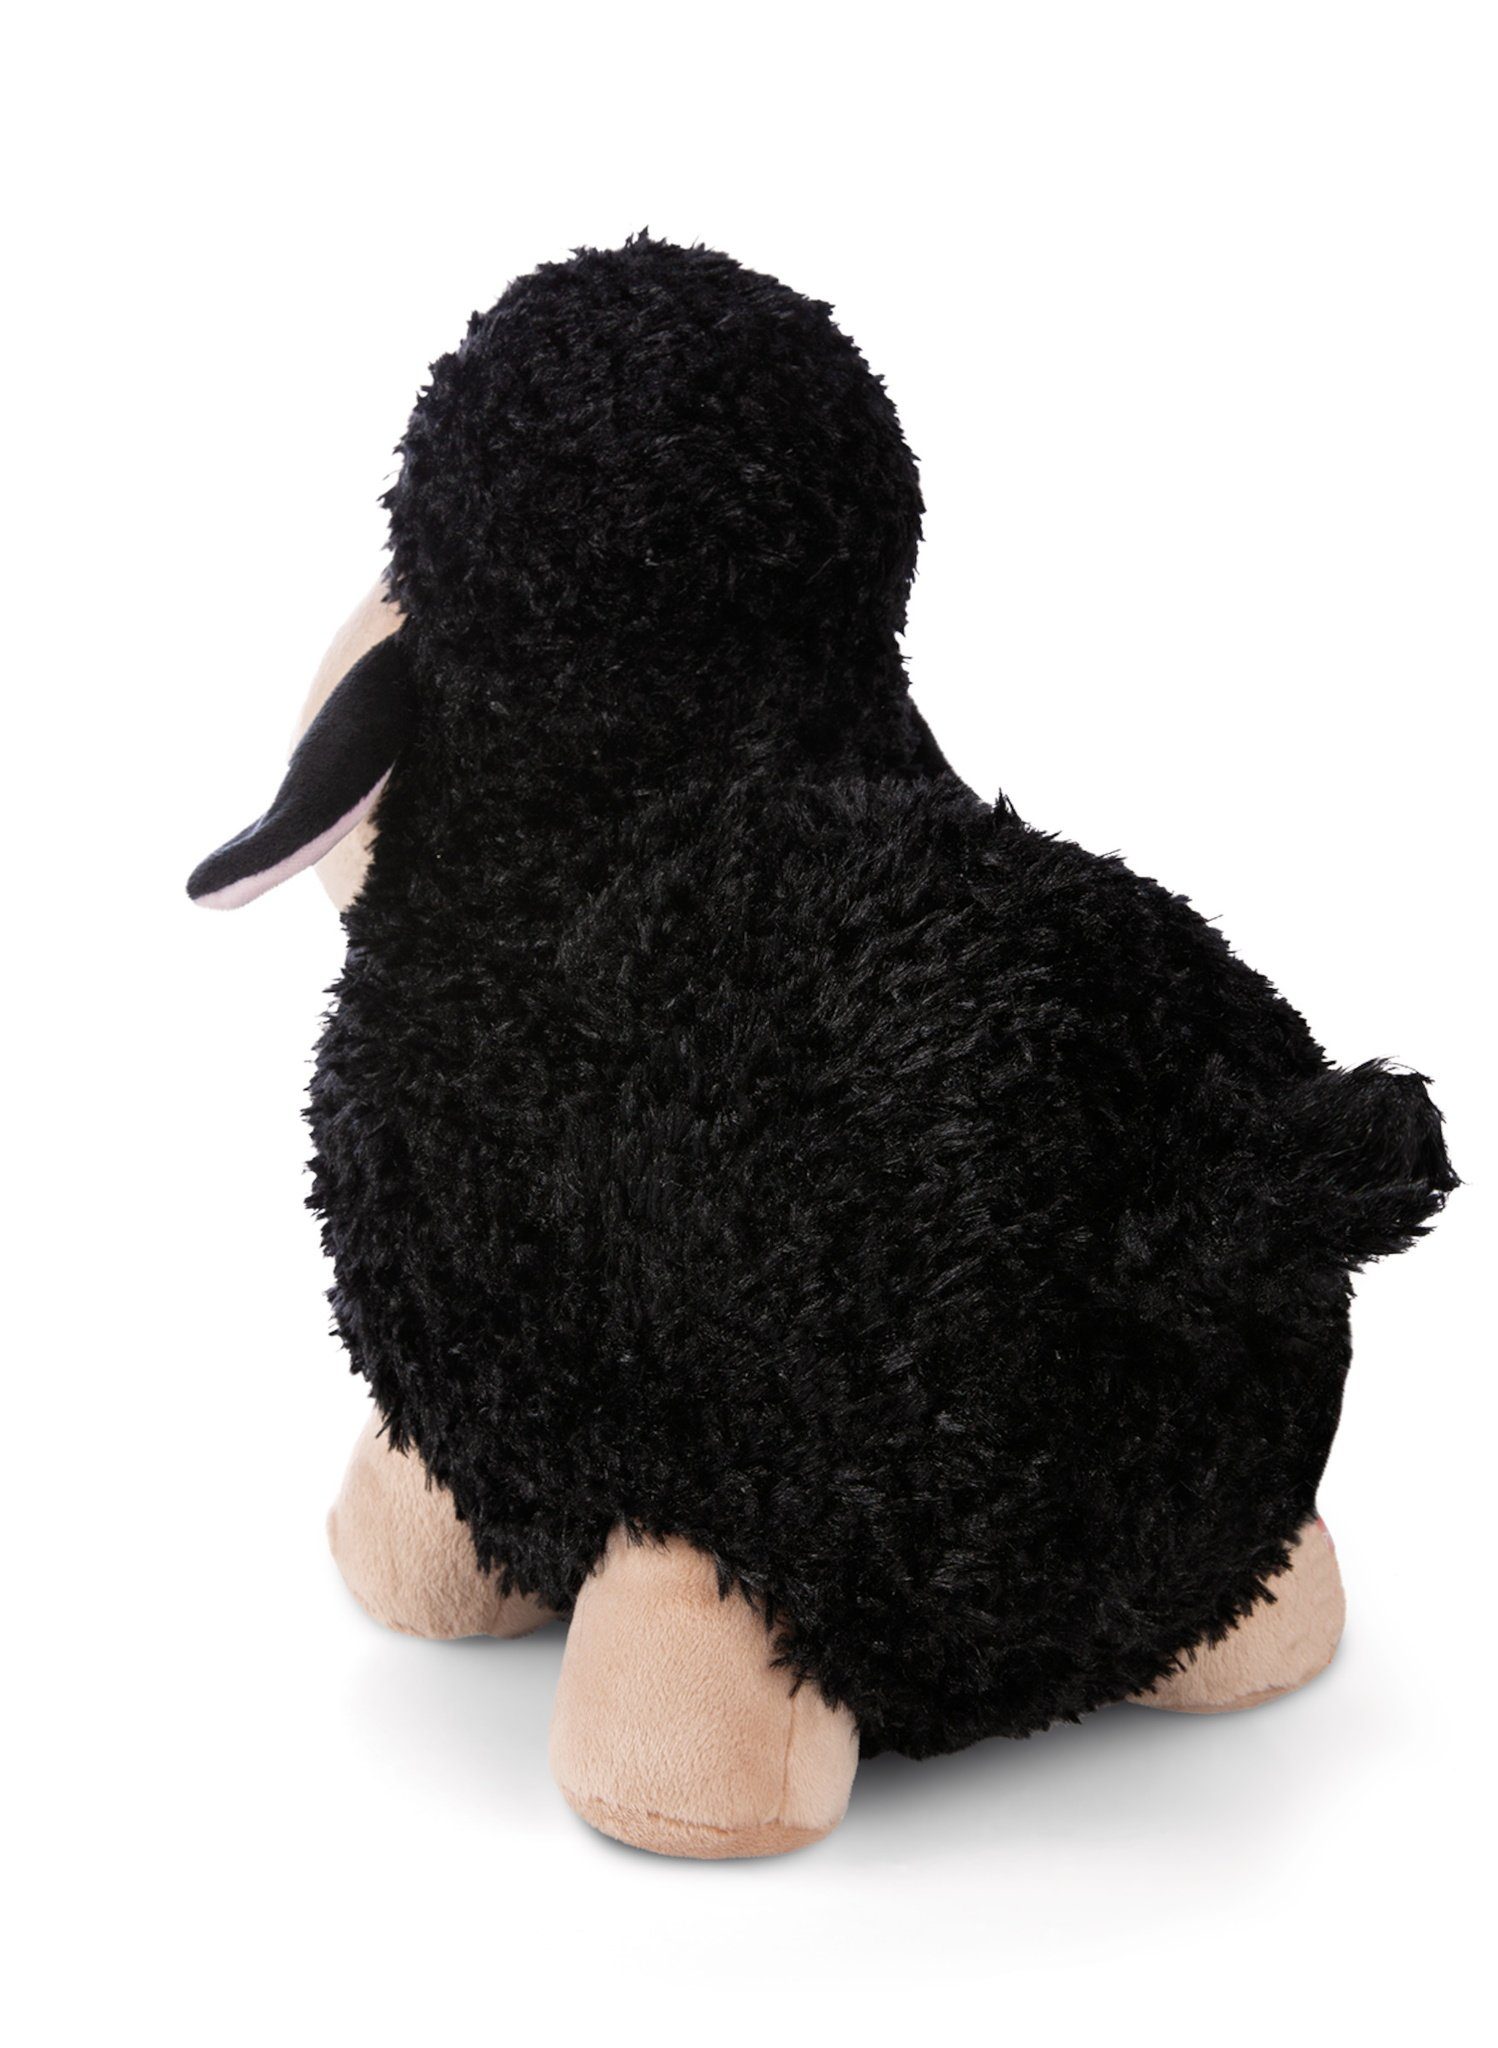 Nici Plüschanhänger Nici Kuscheltier Schaf schwarz/beige 35 cm stehend Plüschschaf